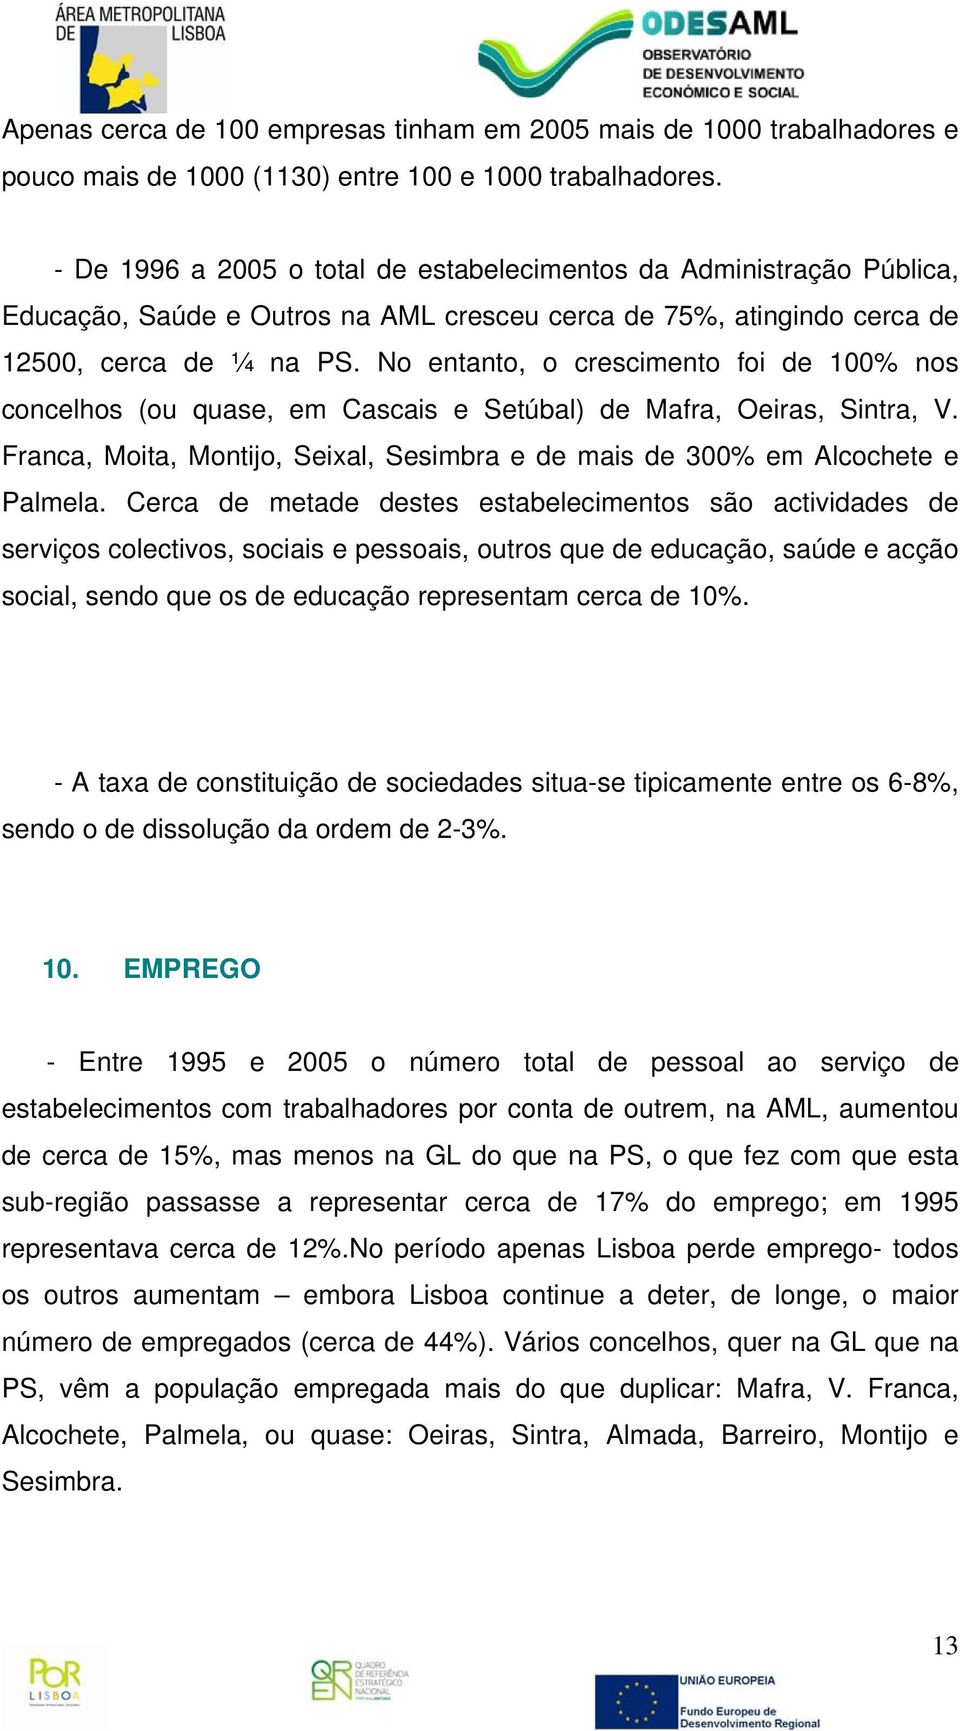 No entanto, o crescimento foi de 100% nos concelhos (ou quase, em Cascais e Setúbal) de Mafra, Oeiras, Sintra, V. Franca, Moita, Montijo, Seixal, Sesimbra e de mais de 300% em Alcochete e Palmela.